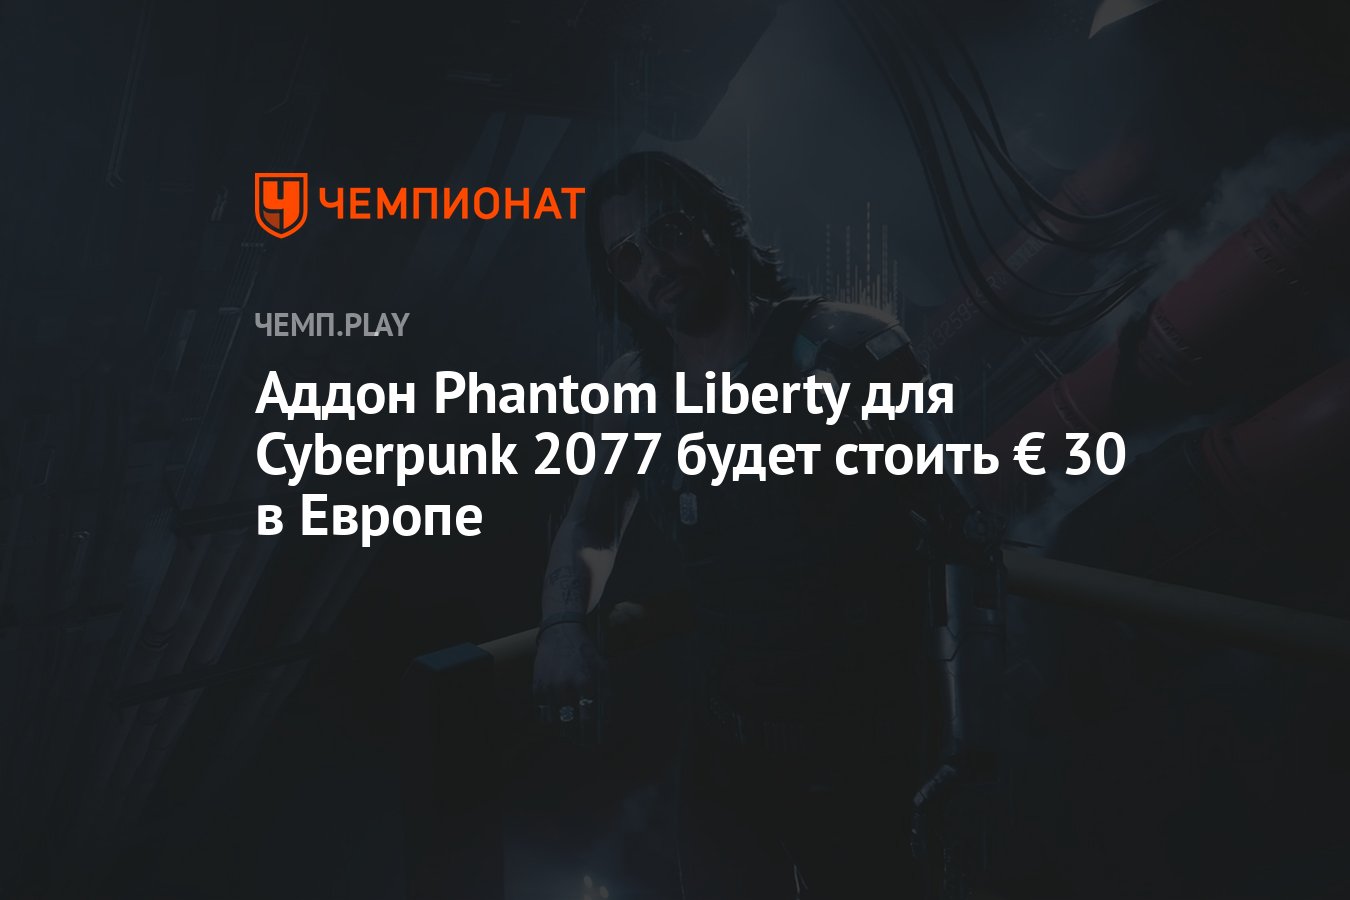 Cyberpunk 2077 Fantom Liberty. Отсутствие файлов скриптов cyberpunk 2077